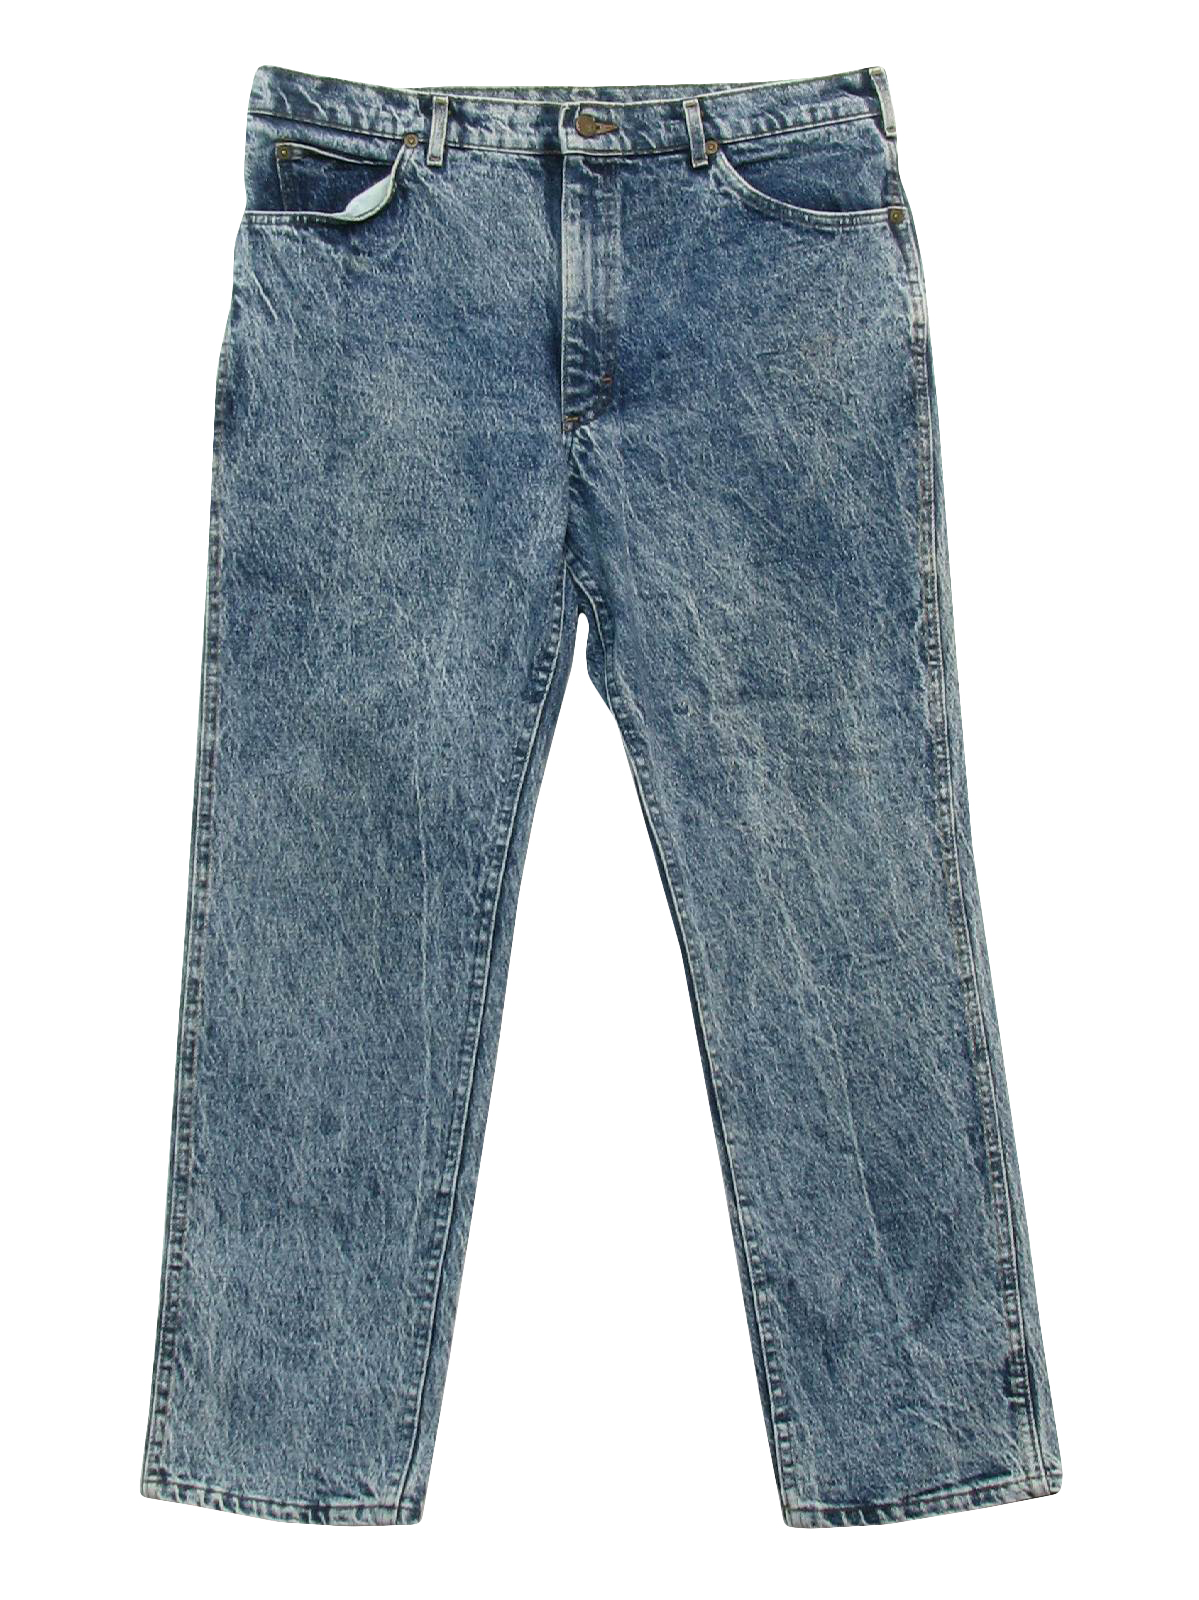 1990's Pants (Lee): 90s -Lee- Mens blue background acid washed cotton ...